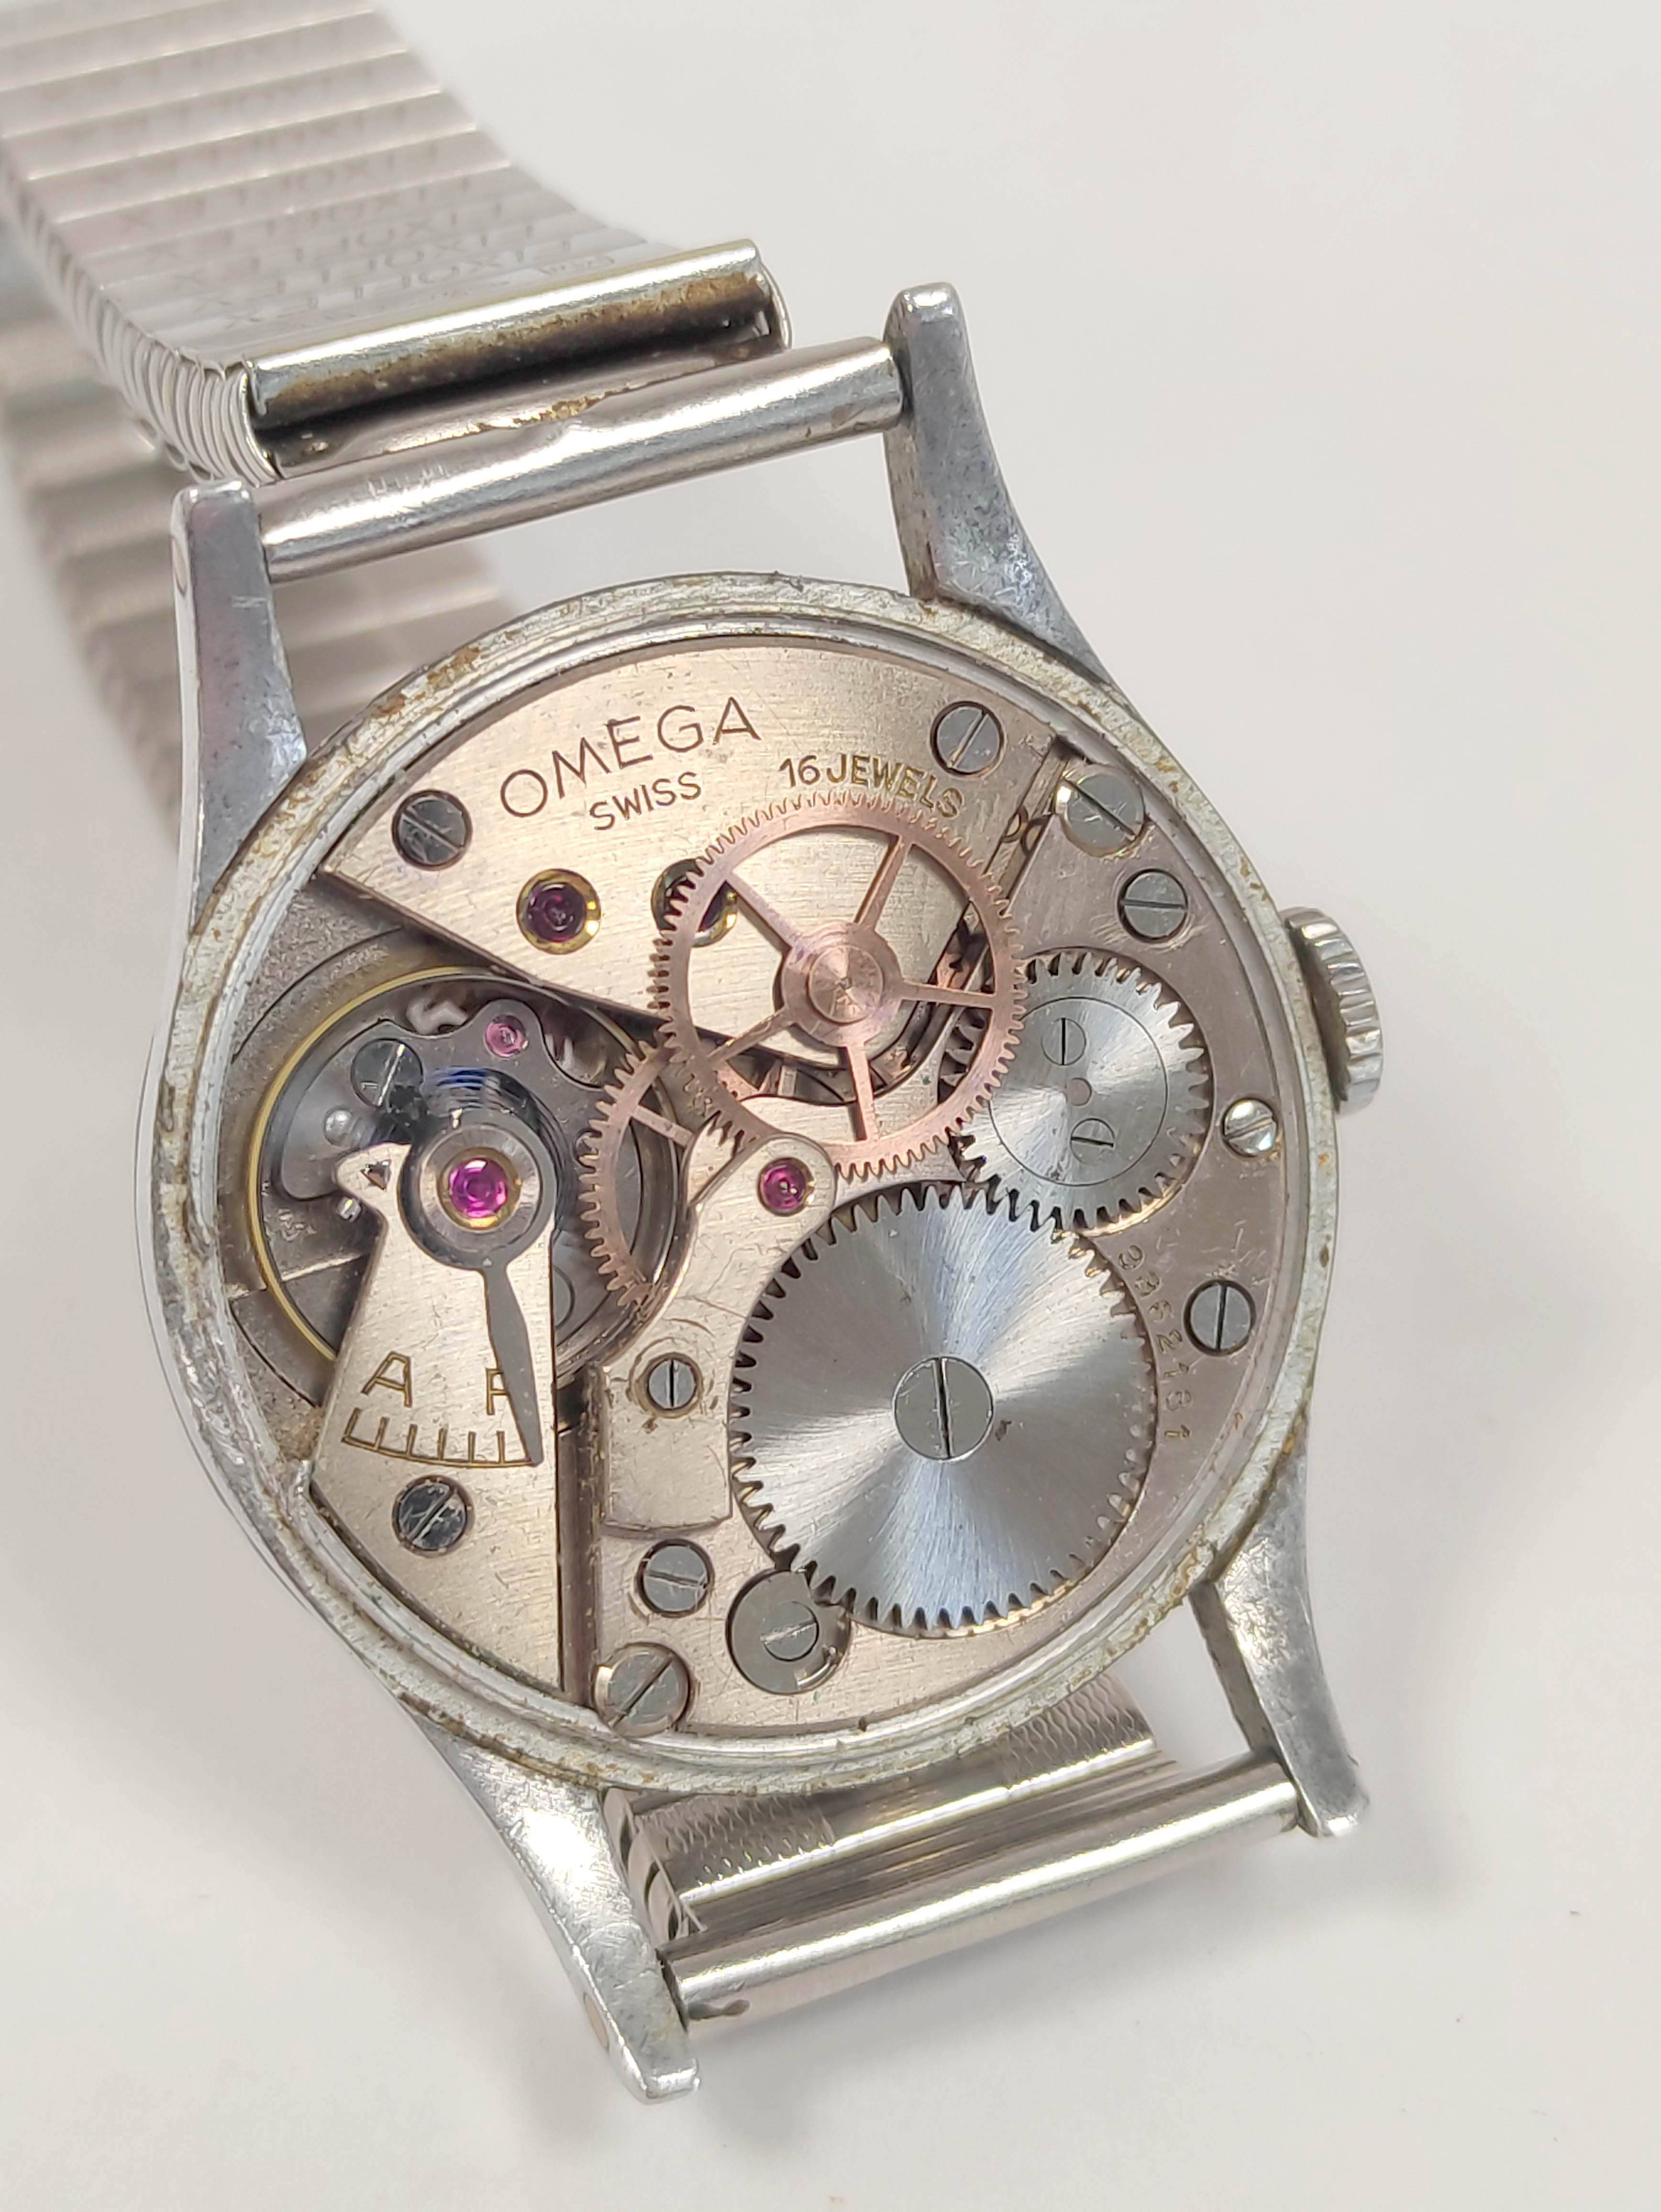 Omega Navigator watch, calibre 30T25C, No 9862181, 6B159 on bracelet case 2292,  1943. - Image 5 of 7